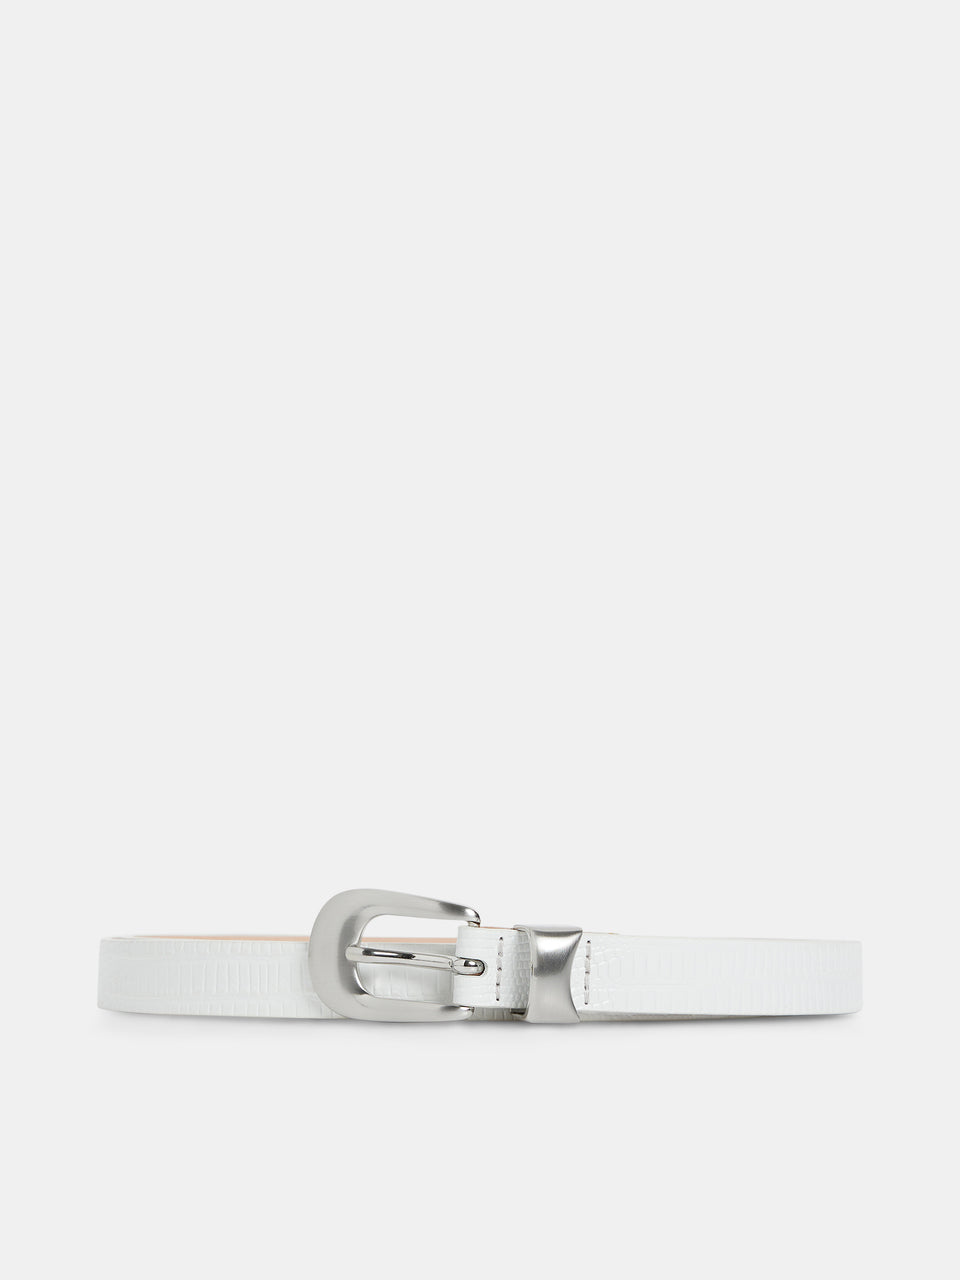 Western Leather Lizard Belt / White